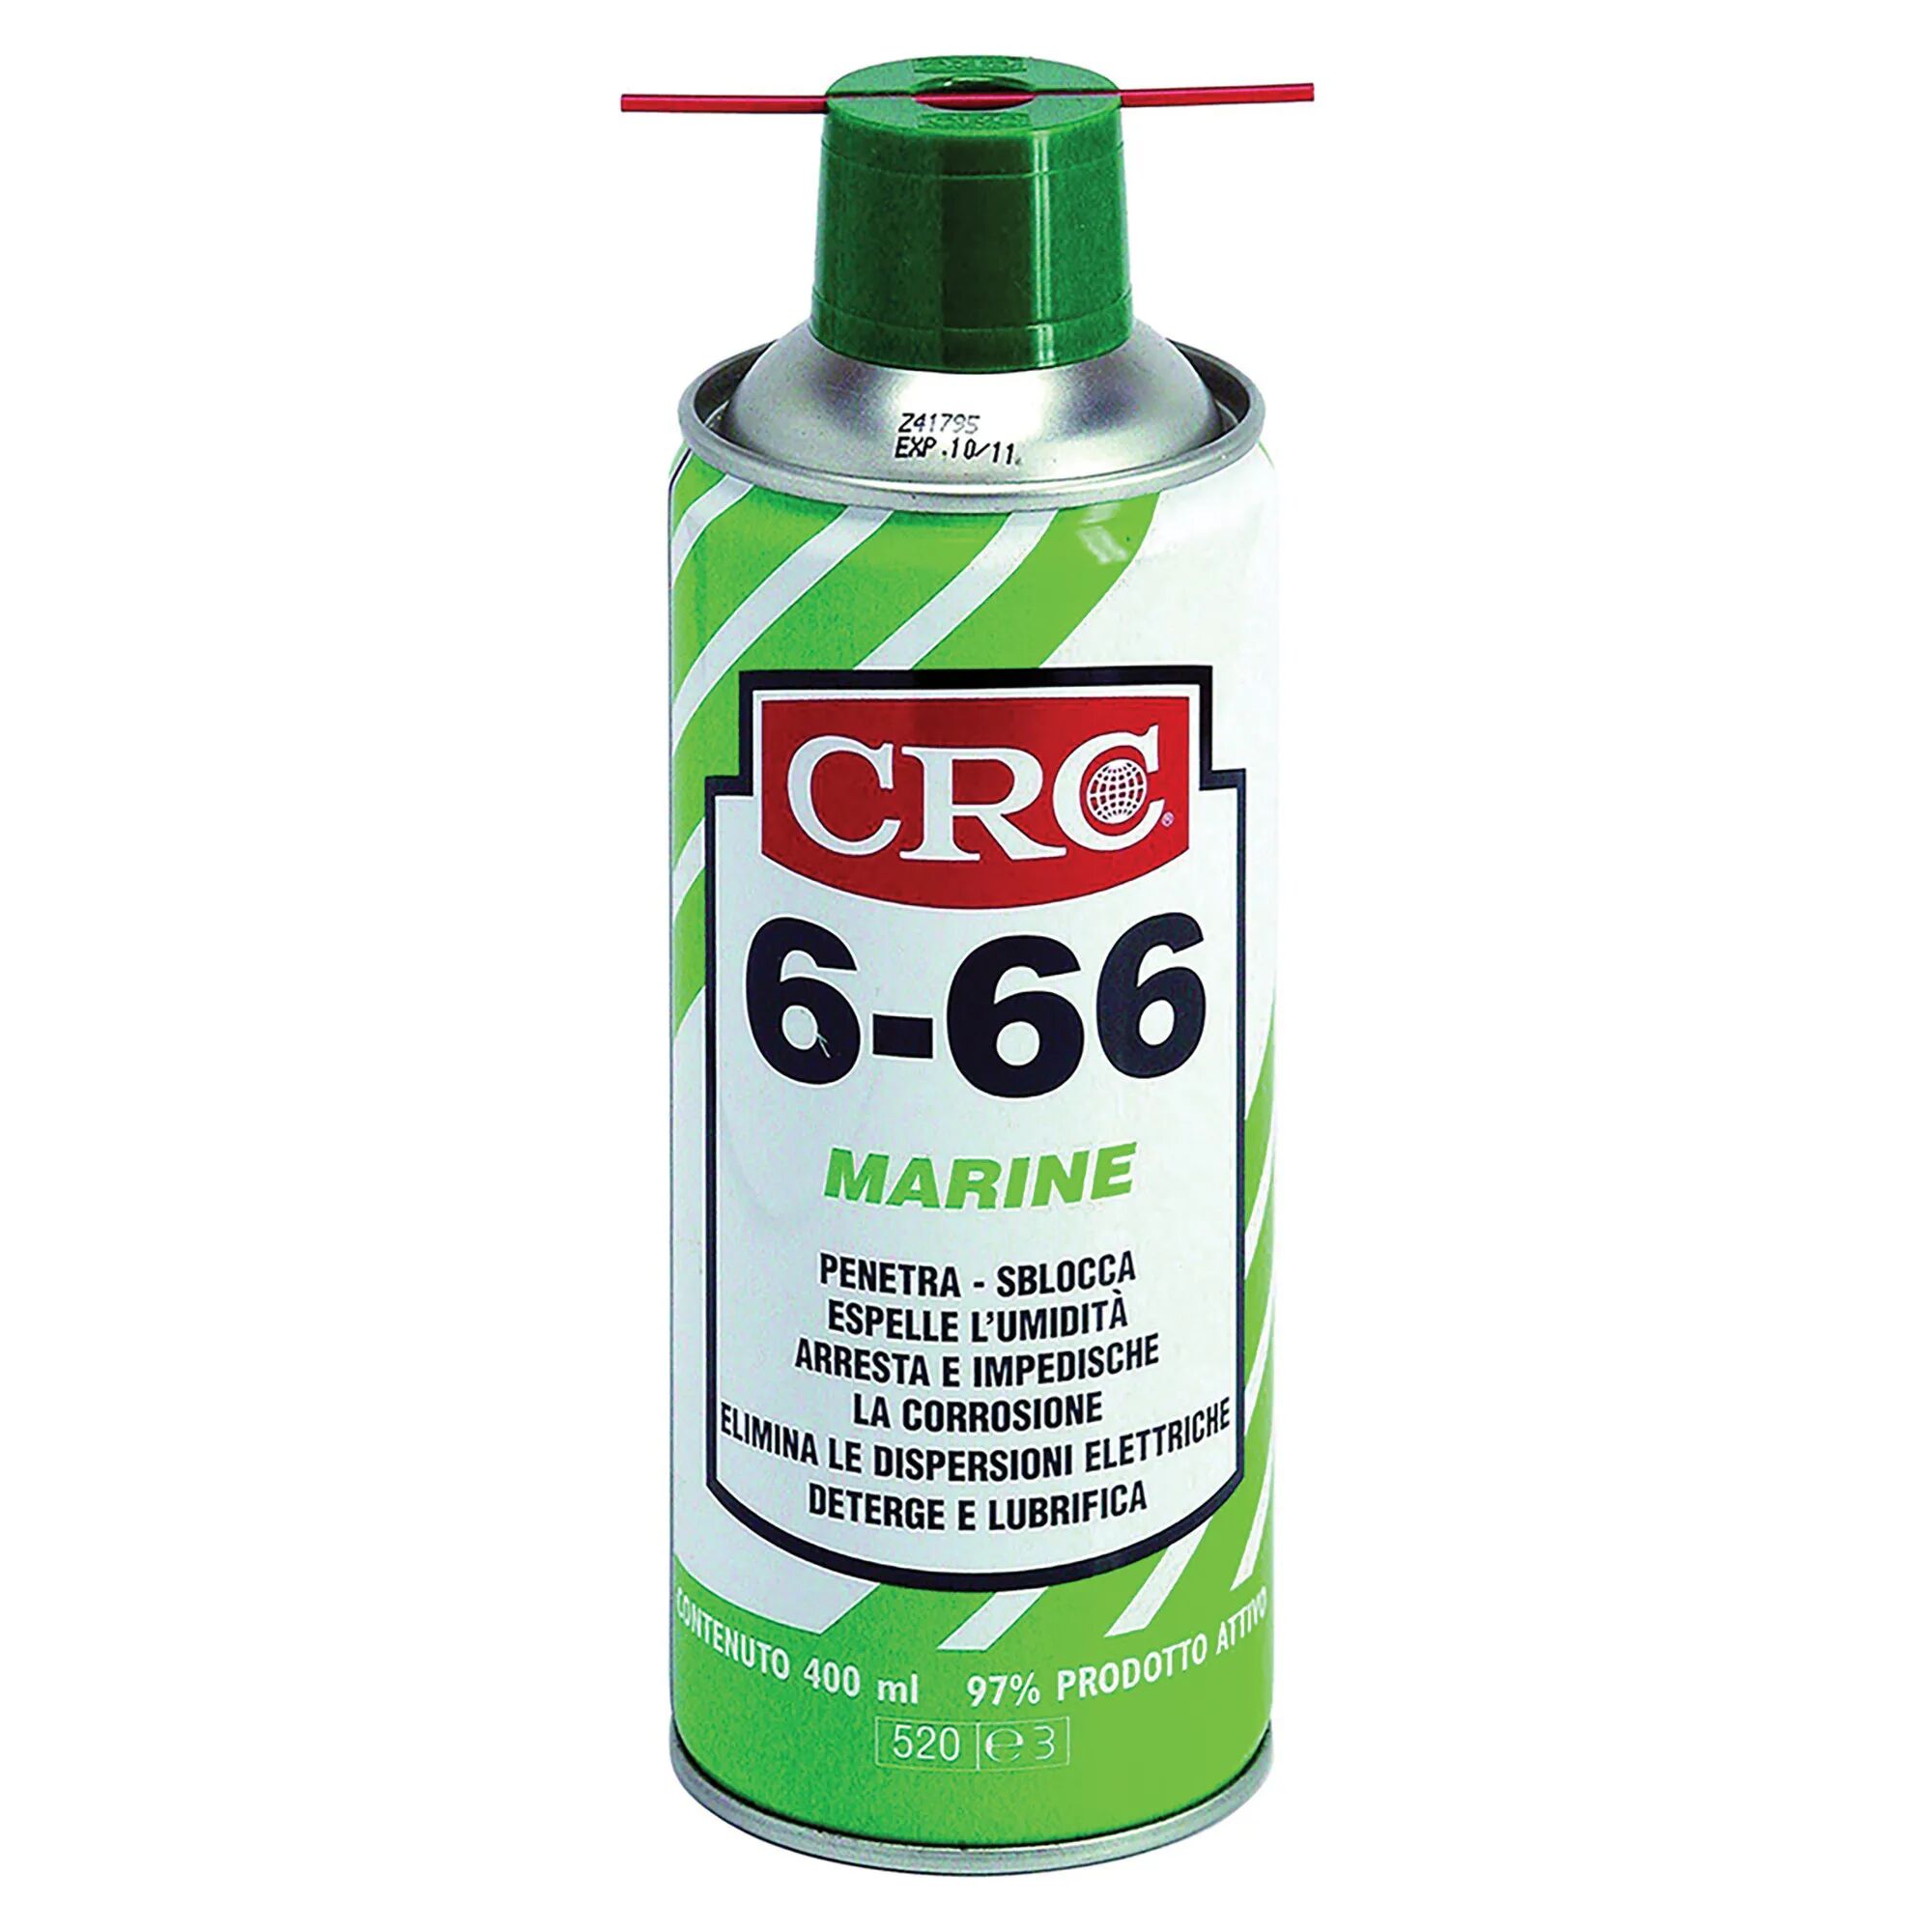 crc protettivo per ambienti salmastrosi spray 400ml  6-66 marine trattamento nautica